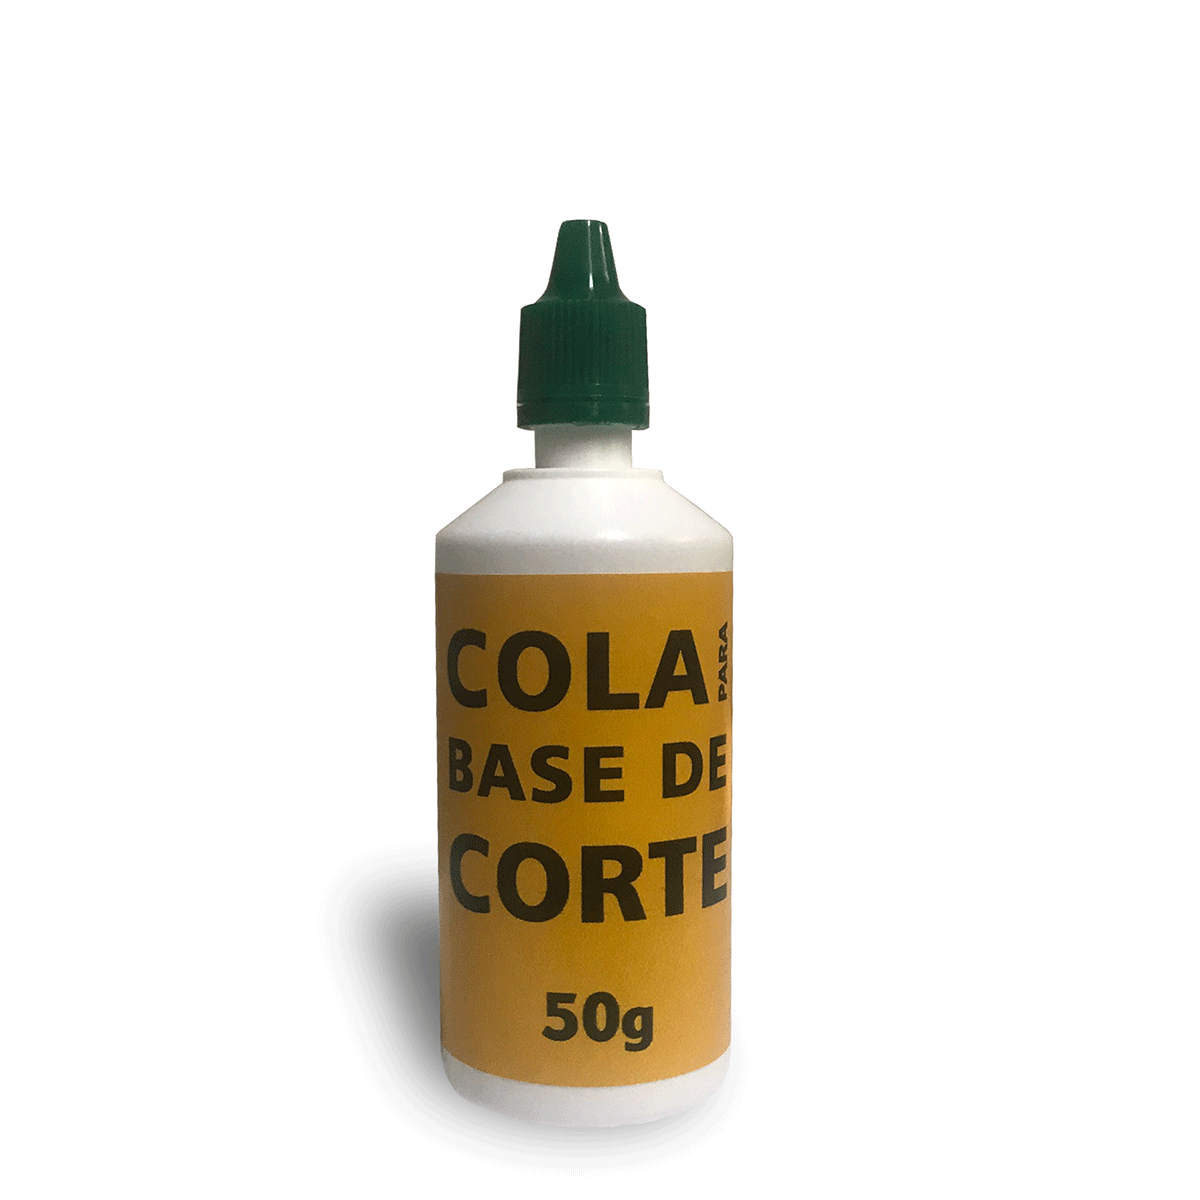 COLA PARA BASE DE CORTE 50g